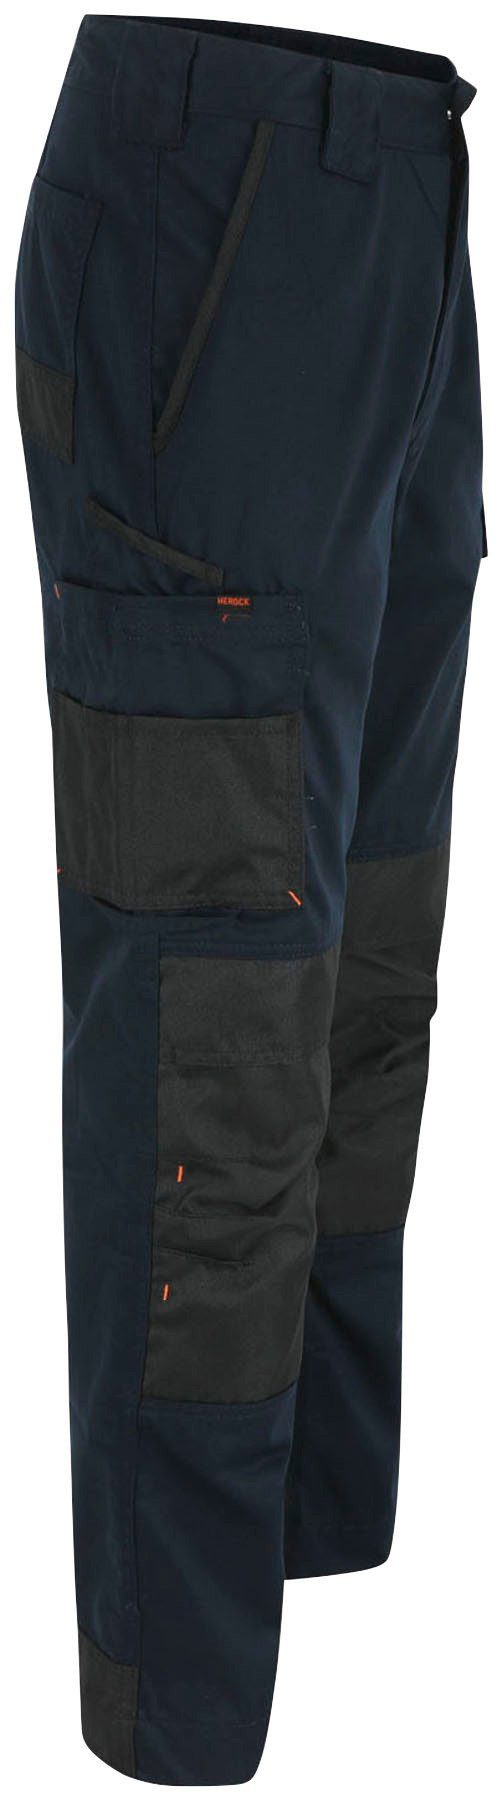 Taschen, Arbeitshose Herock marine wasserabweisend, bequem, und Passform 10 angenehme Leicht Mars Hose